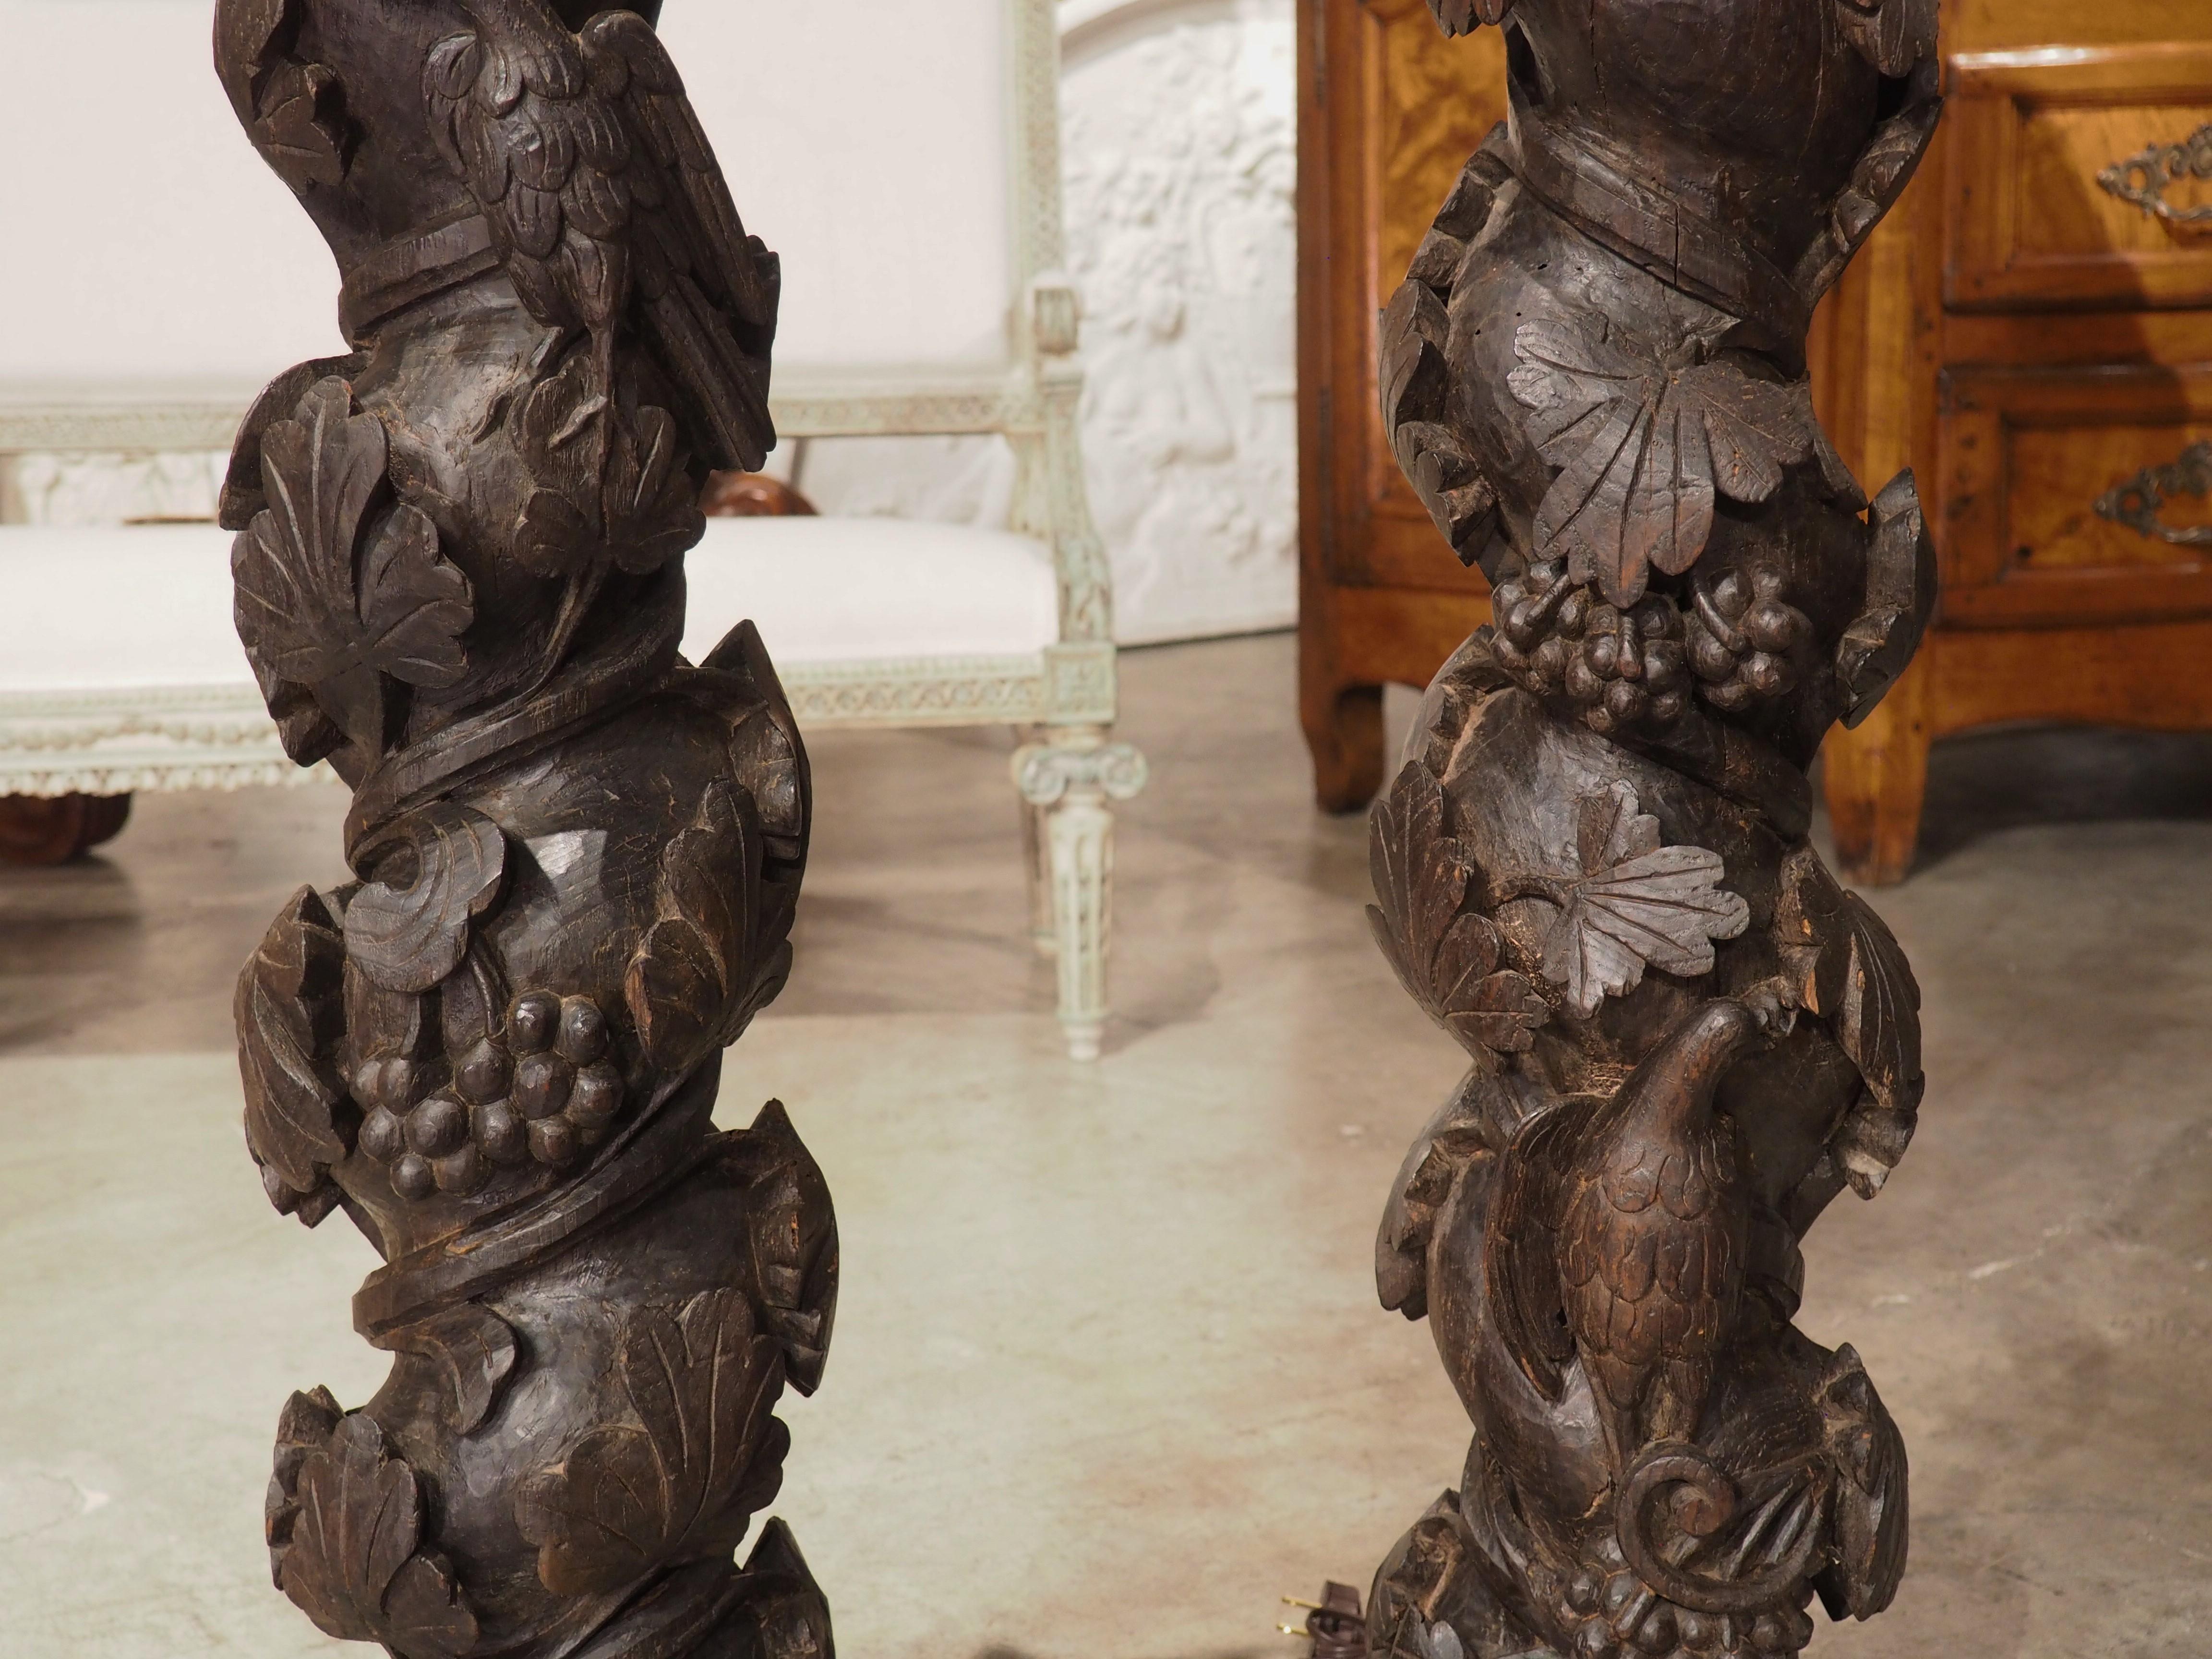 Ursprünglich ein Paar architektonischer Säulen, wurden diese salomonischen Säulen zu einem einzigartigen Lampenset umfunktioniert. Die spiralförmigen Säulen, die um 1700 in Portugal von Hand aus Kastanienholz geschnitzt wurden, sind lebendige